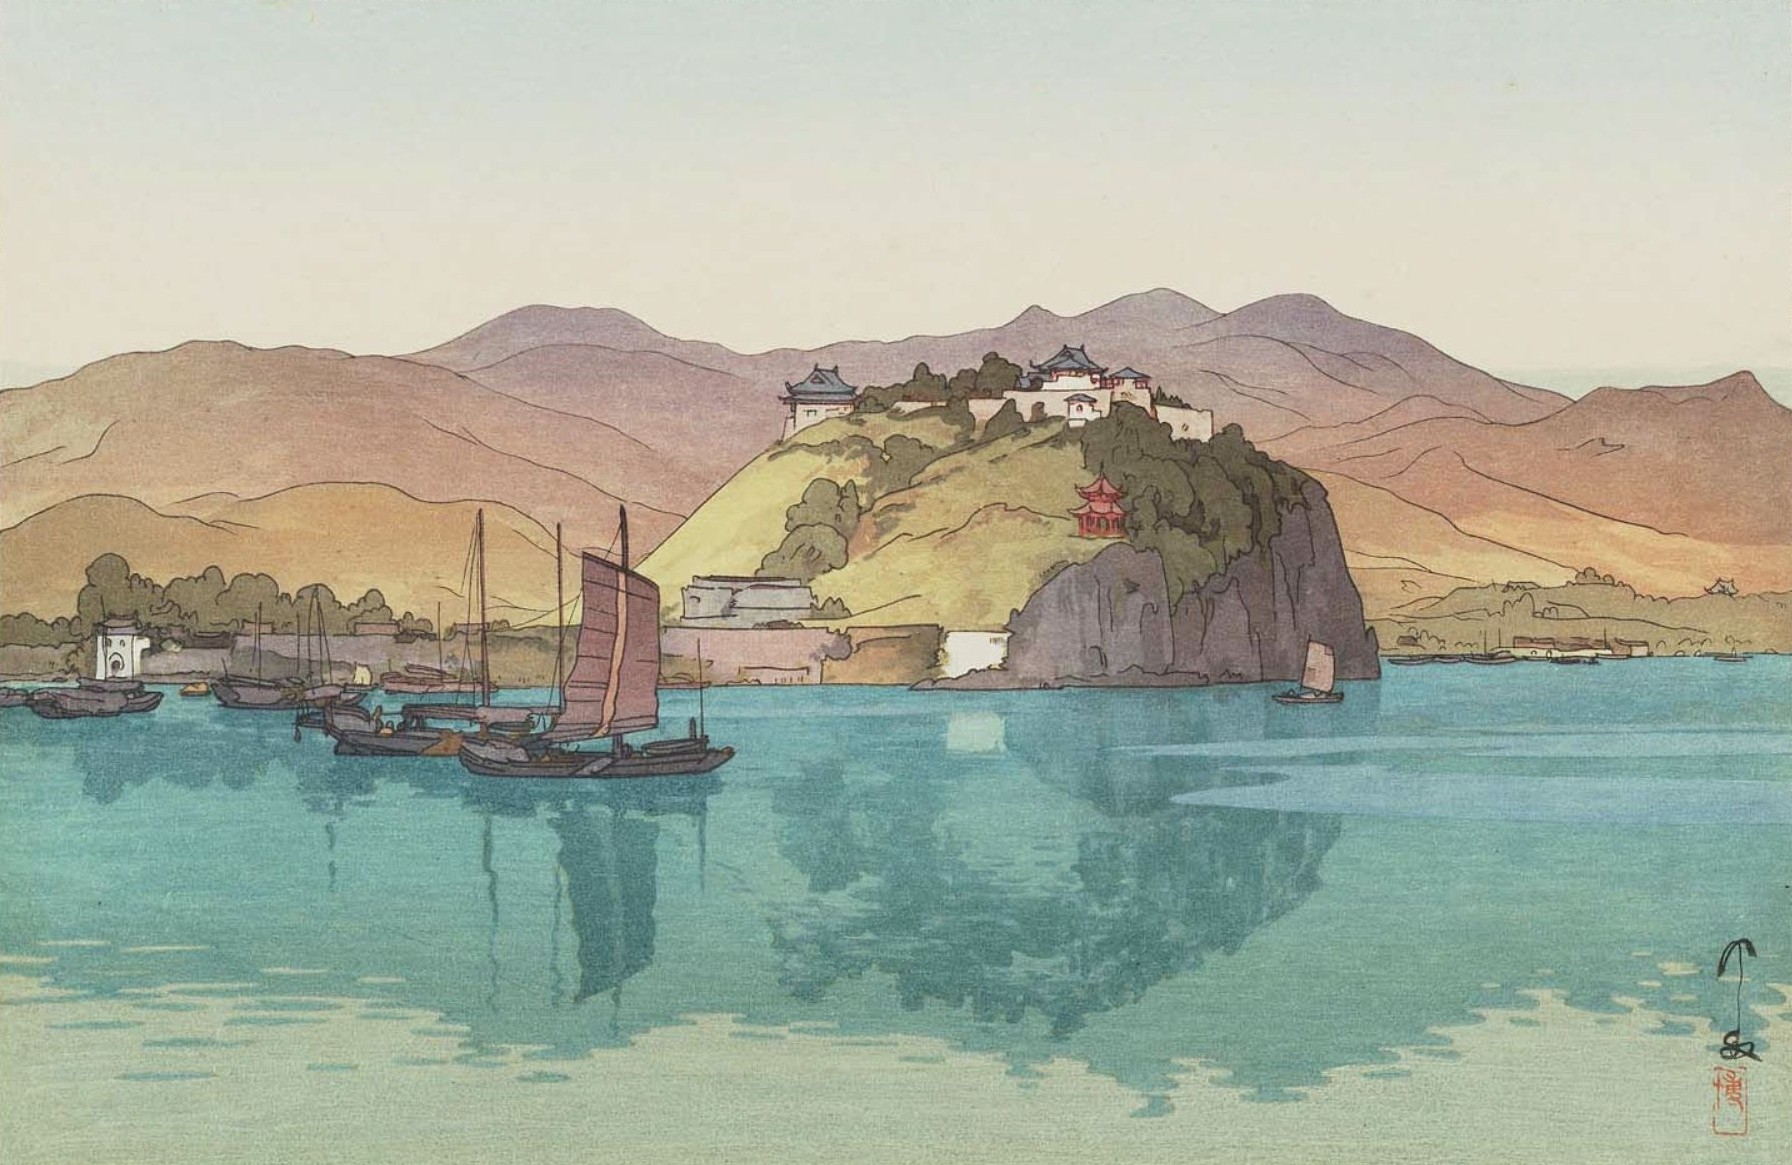 Yoshida Hiroshi, Japanese, Artwork, Painting, Mountains, Water, Boat Wallpaper